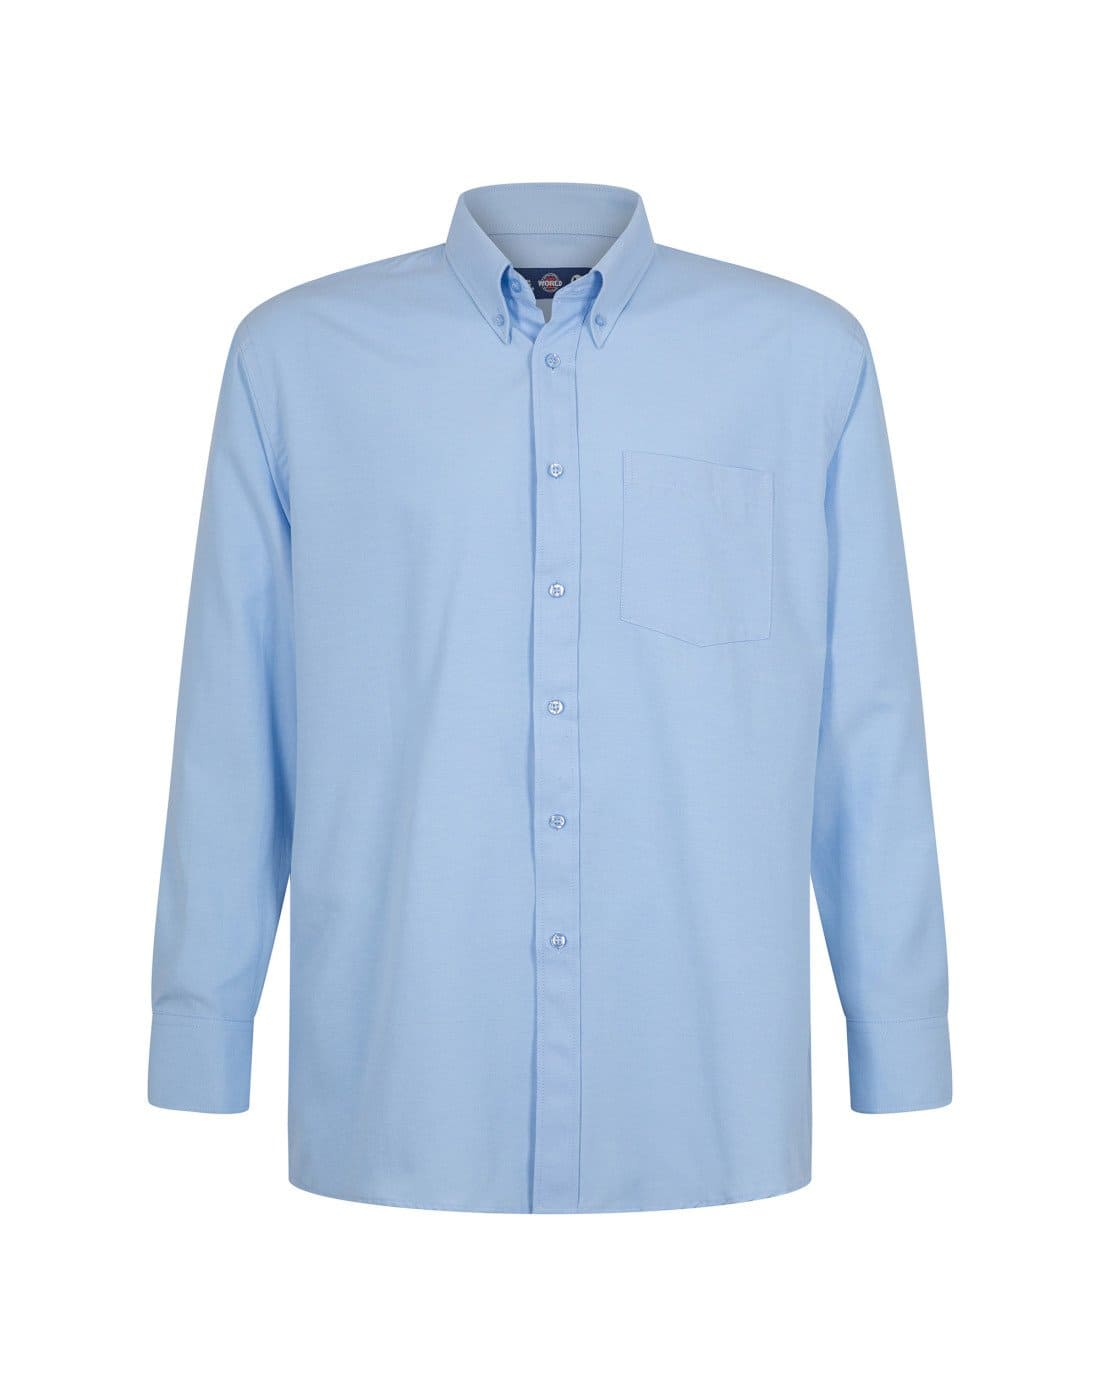 Camisa Oxford con bolsillo de TEAMGRAFF, combinación perfecta de estilo y practicidad, adecuada para profesionales y uso casual